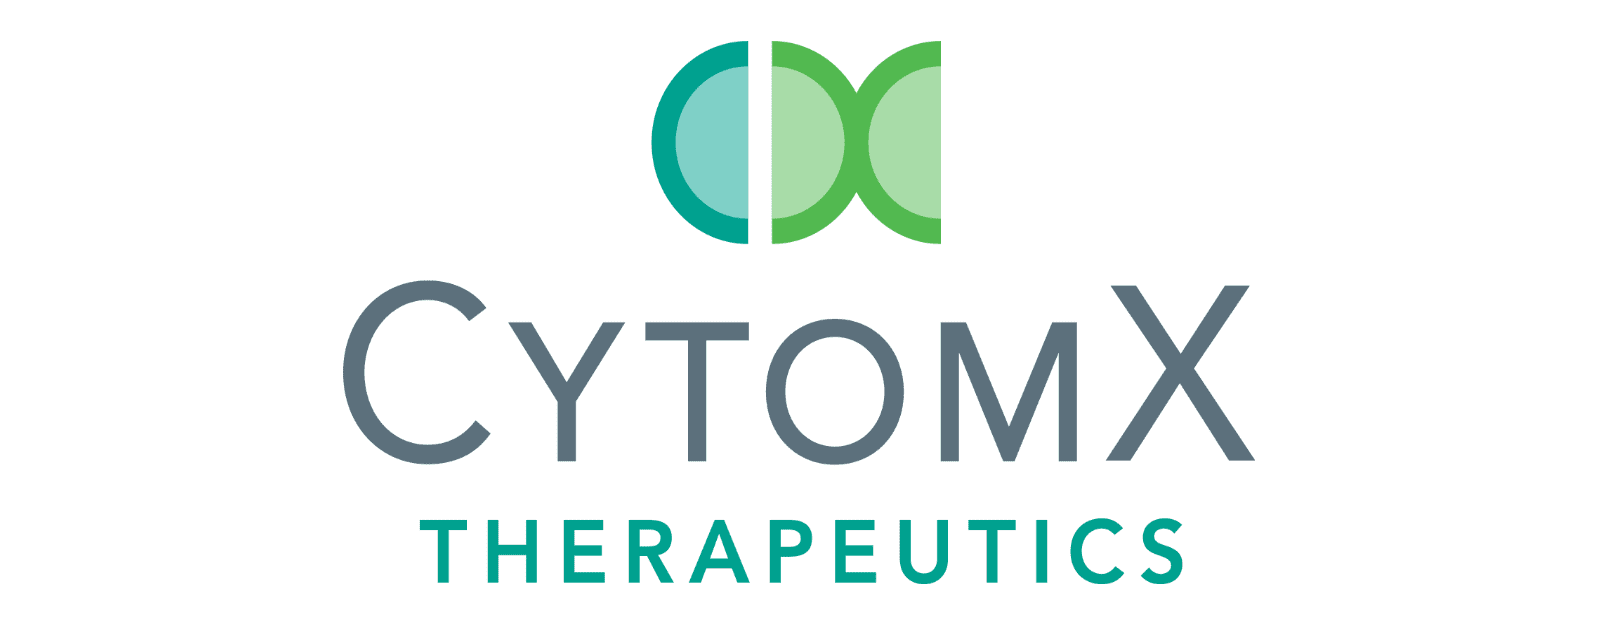 CytomX Logo PMS